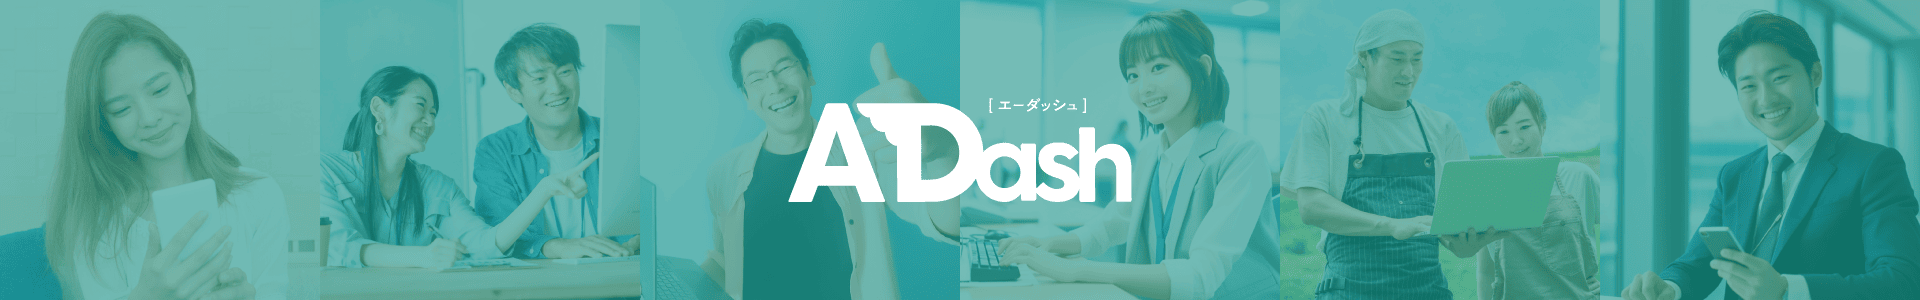 ADash（エーダッシュ）